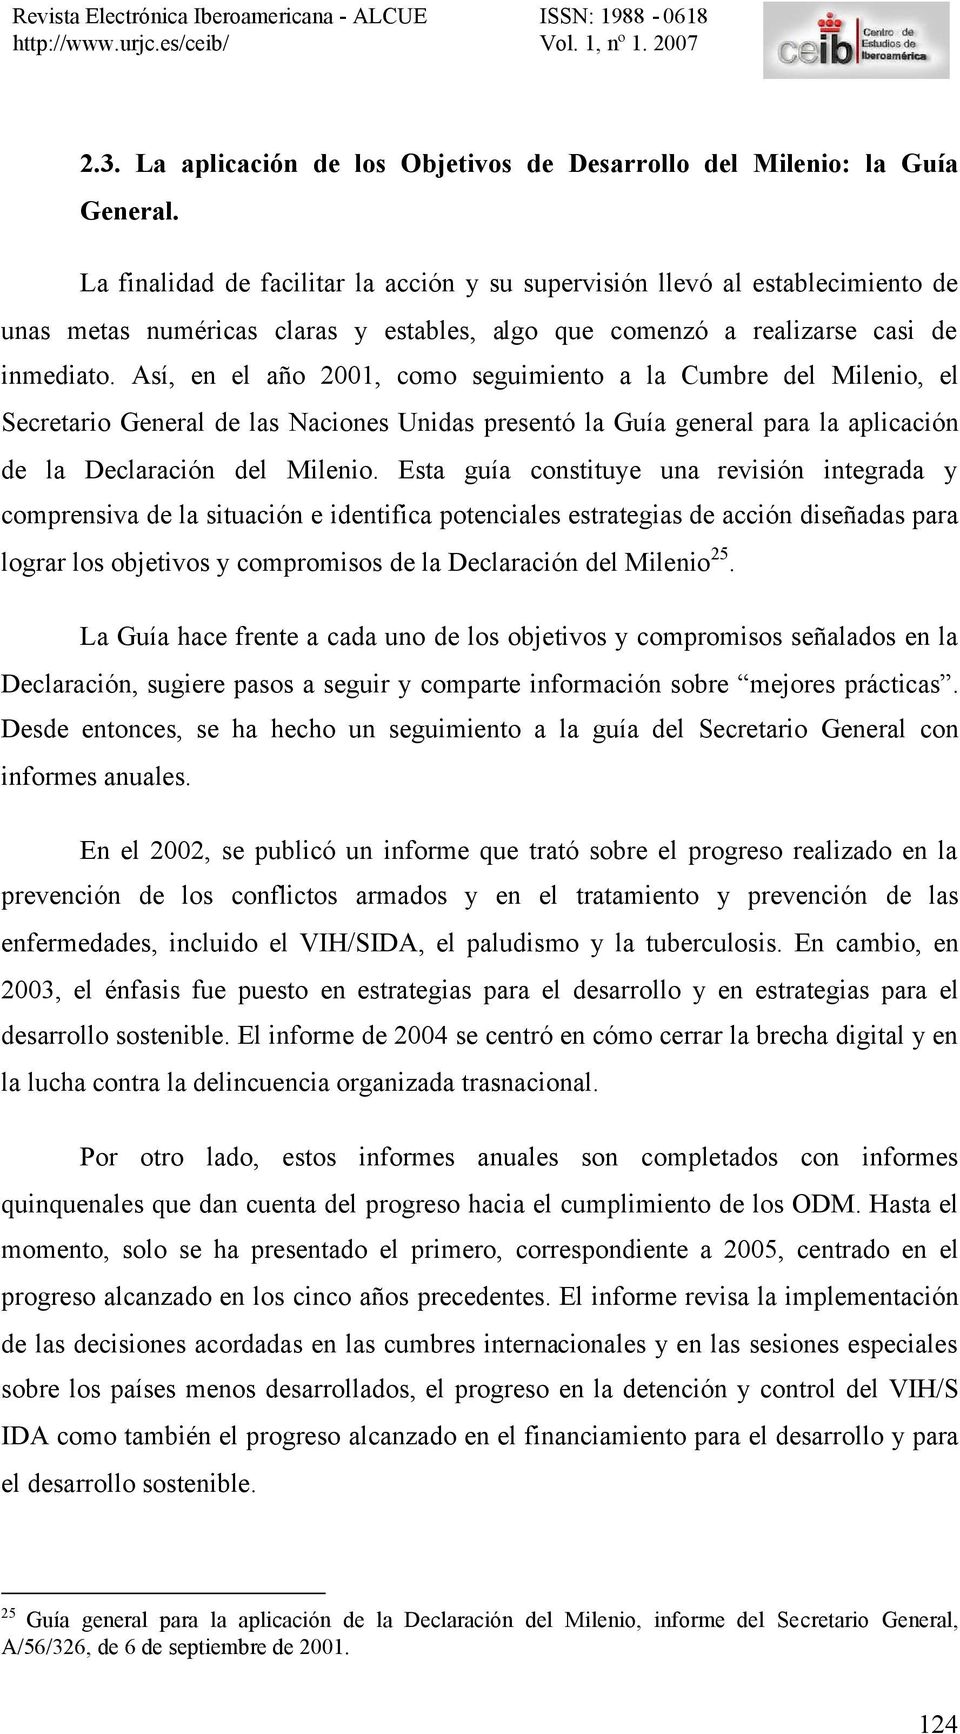 Así, en el año 2001, como seguimiento a la Cumbre del Milenio, el Secretario General de las Naciones Unidas presentó la Guía general para la aplicación de la Declaración del Milenio.